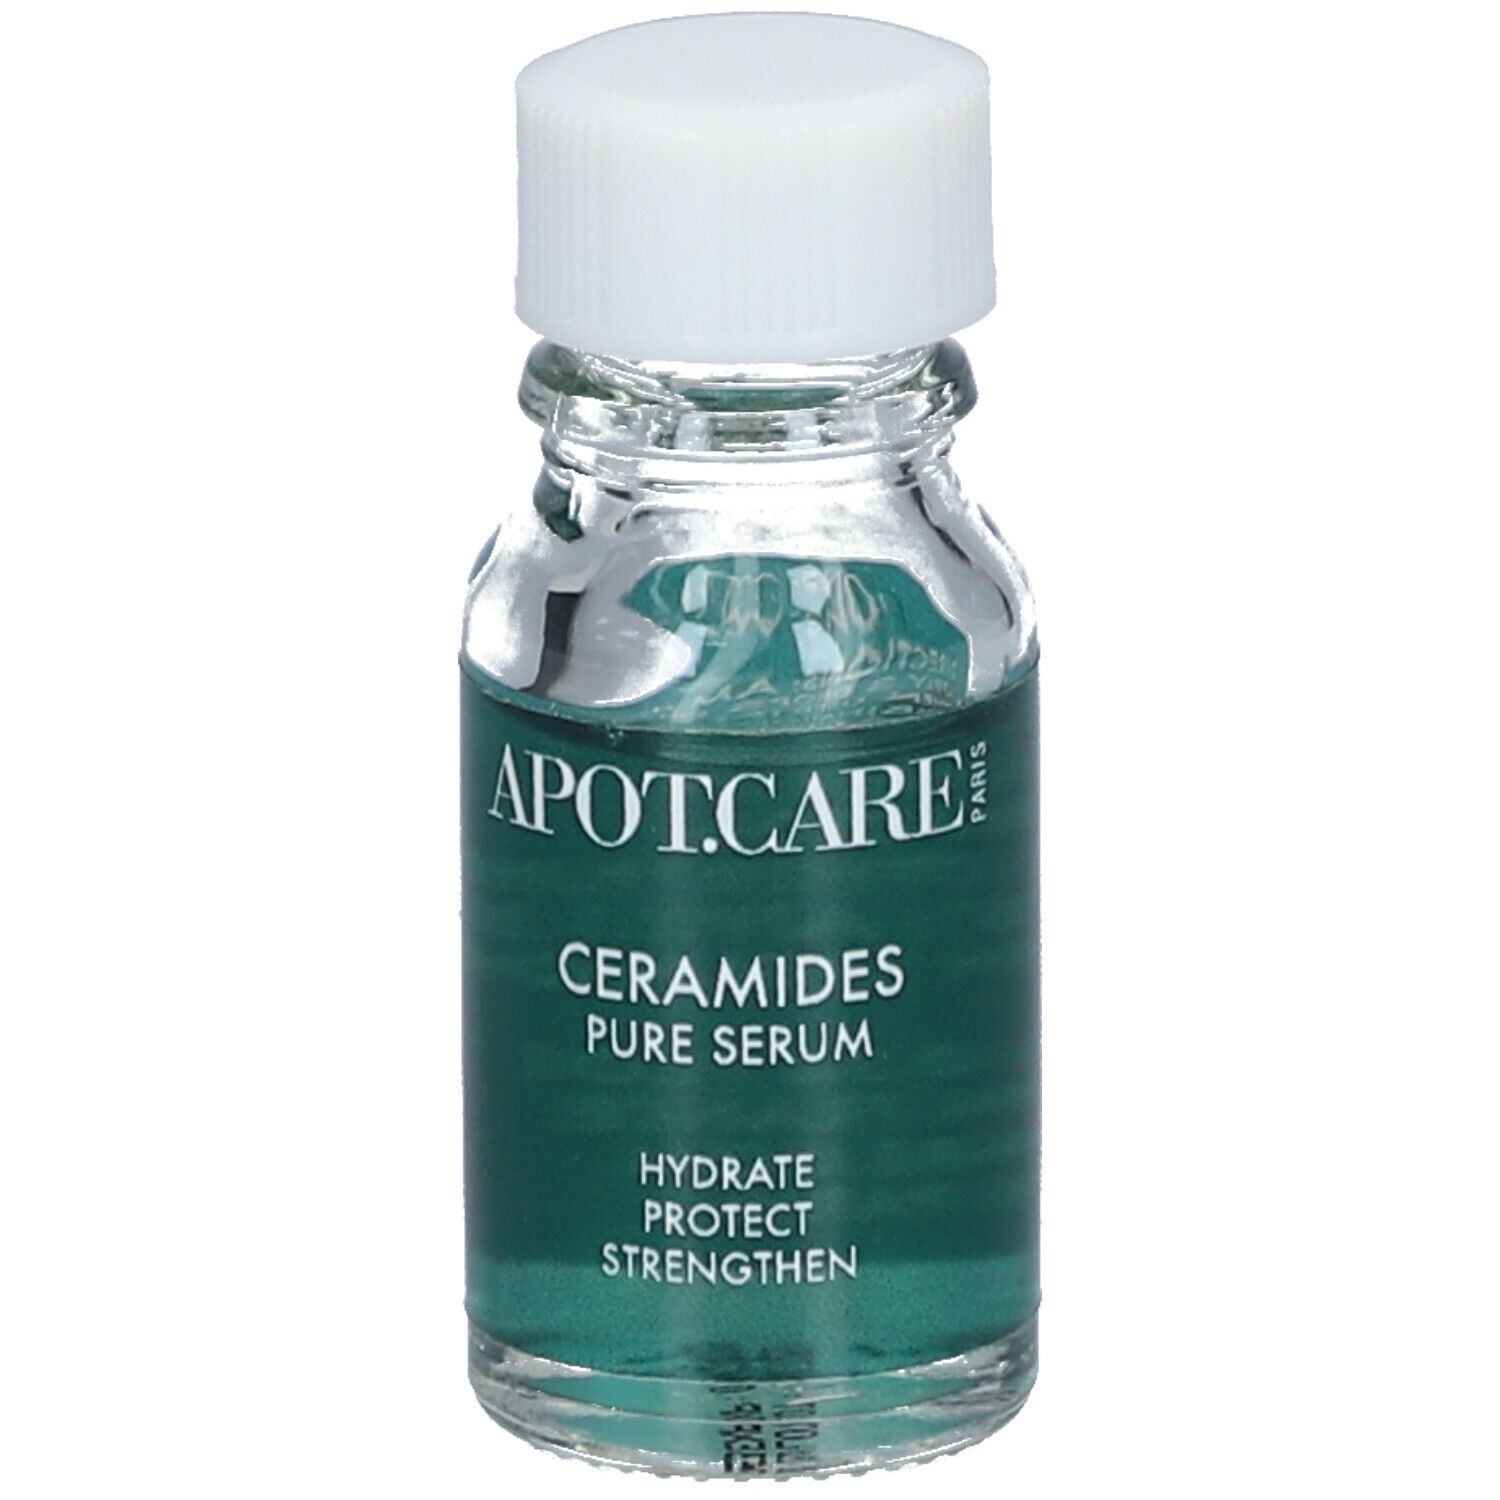 APOT.CARE Ceramides Pure Serum